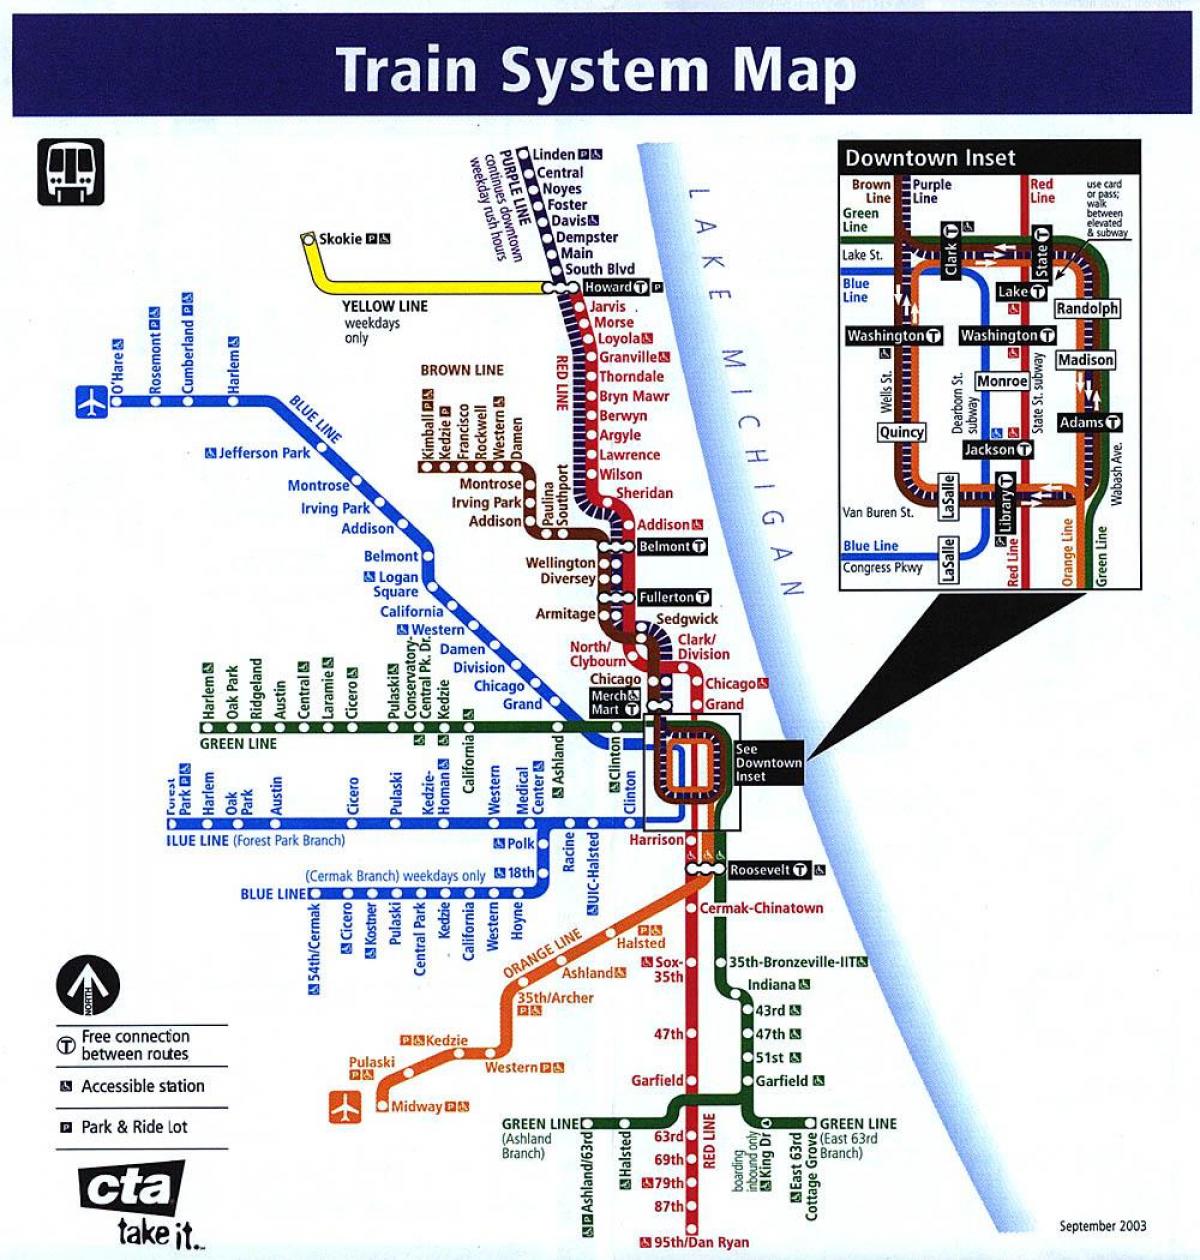 Chicago metro linjer kart